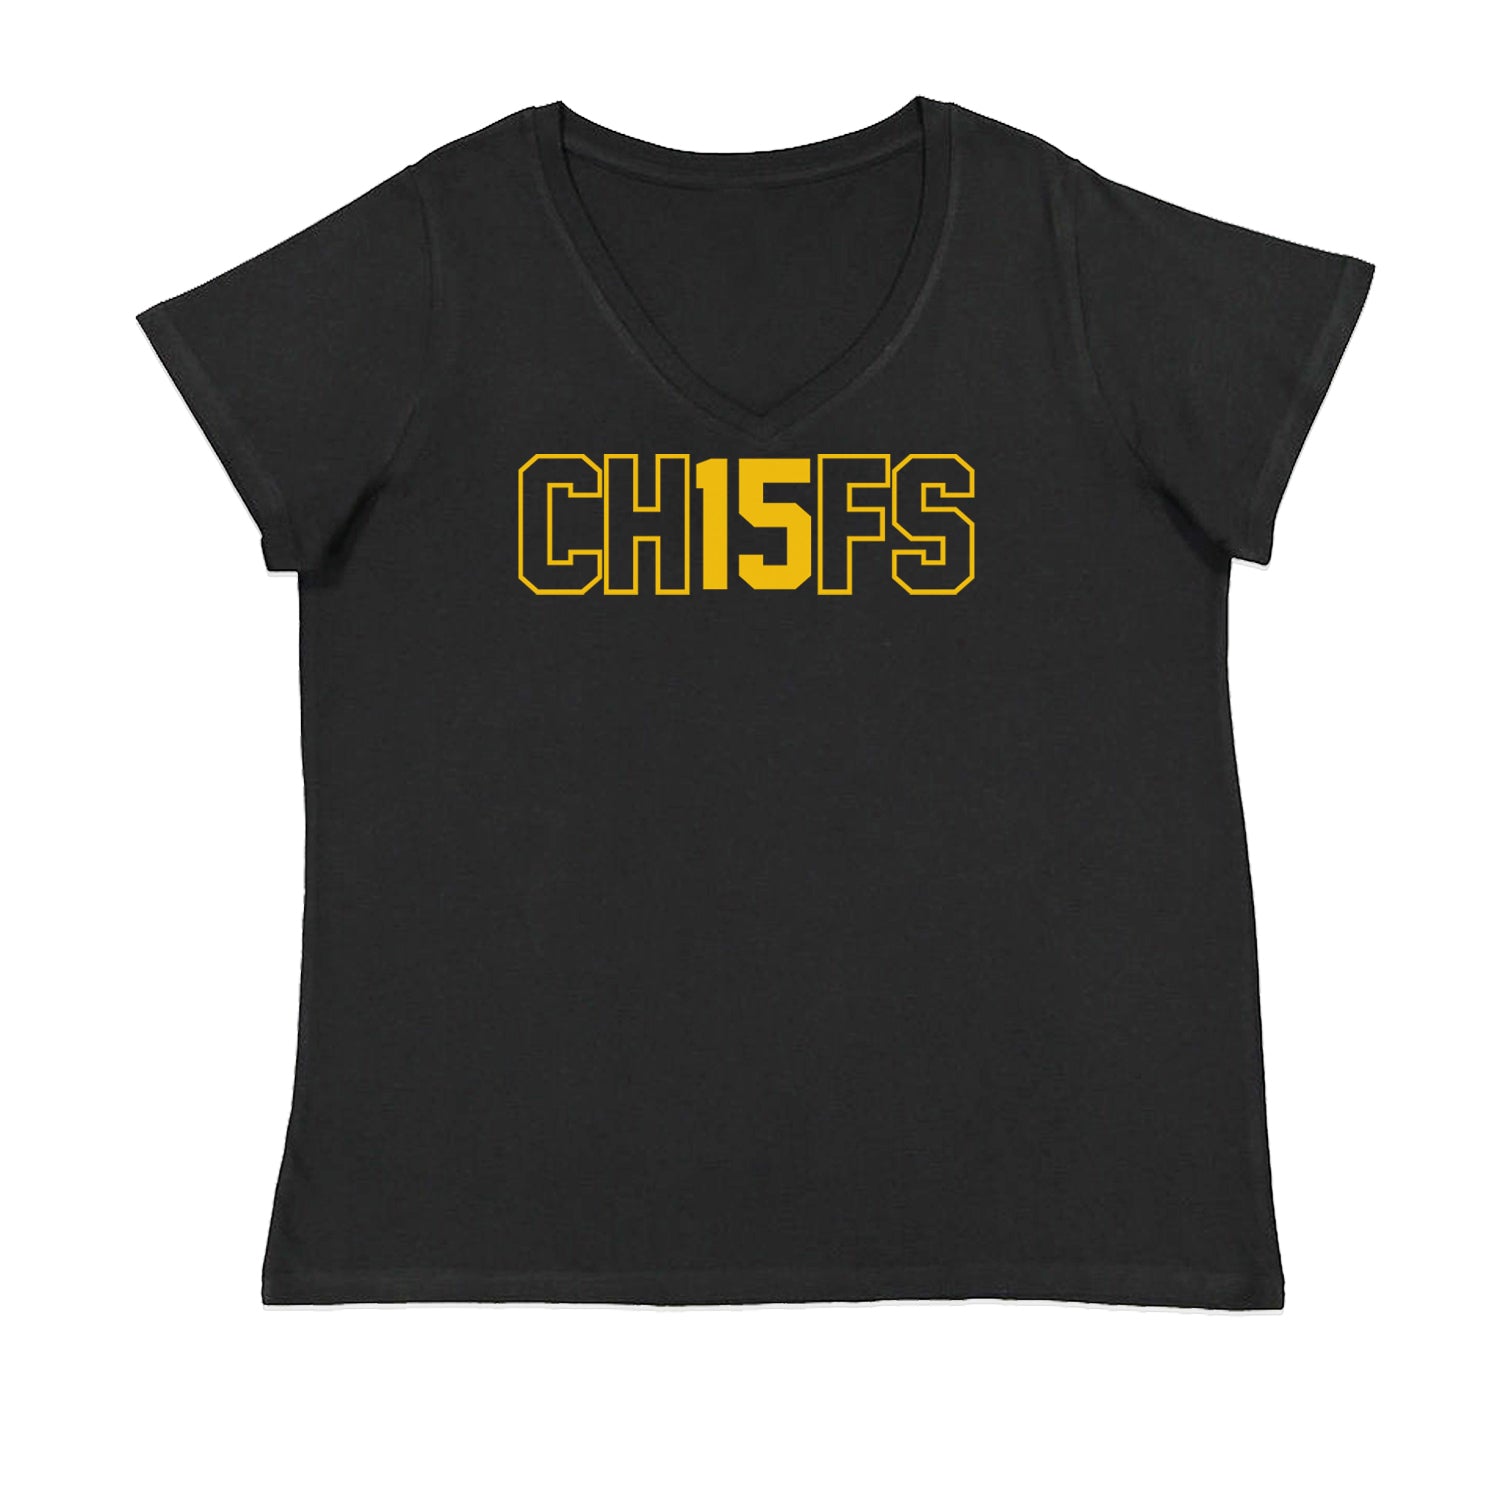 Ch15fs Chief 15 Shirt Ladies V-Neck T-shirt Black